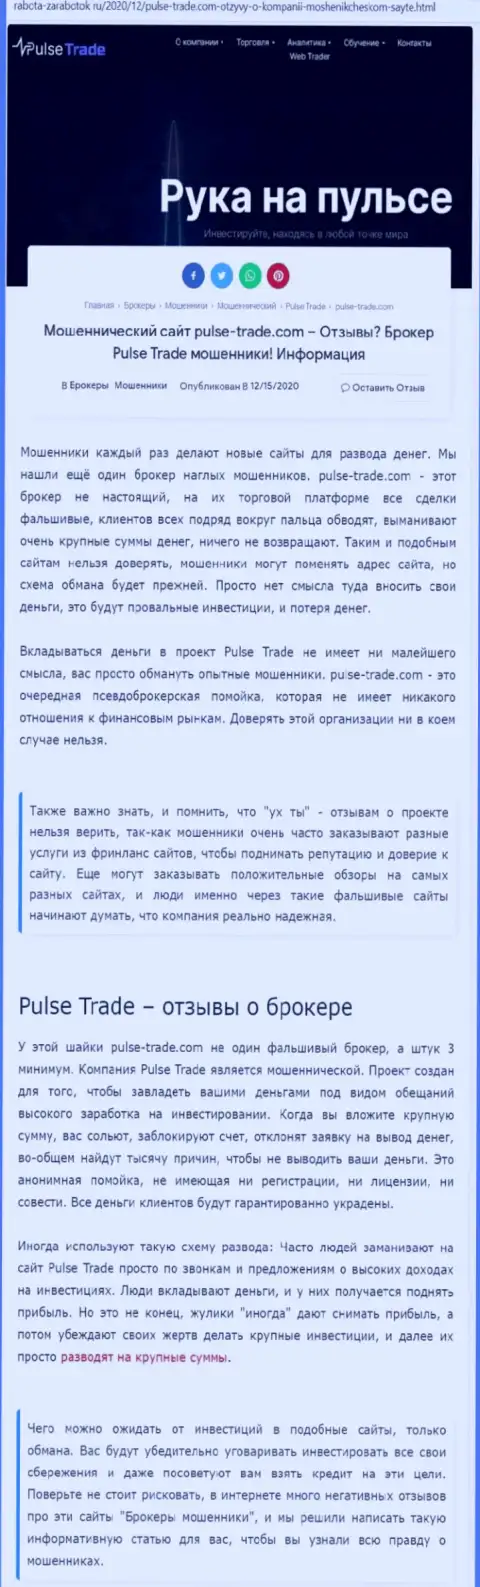 Pulse-Trade это очевидные internet разводилы, не ведитесь на заманчивые условия (статья с разбором